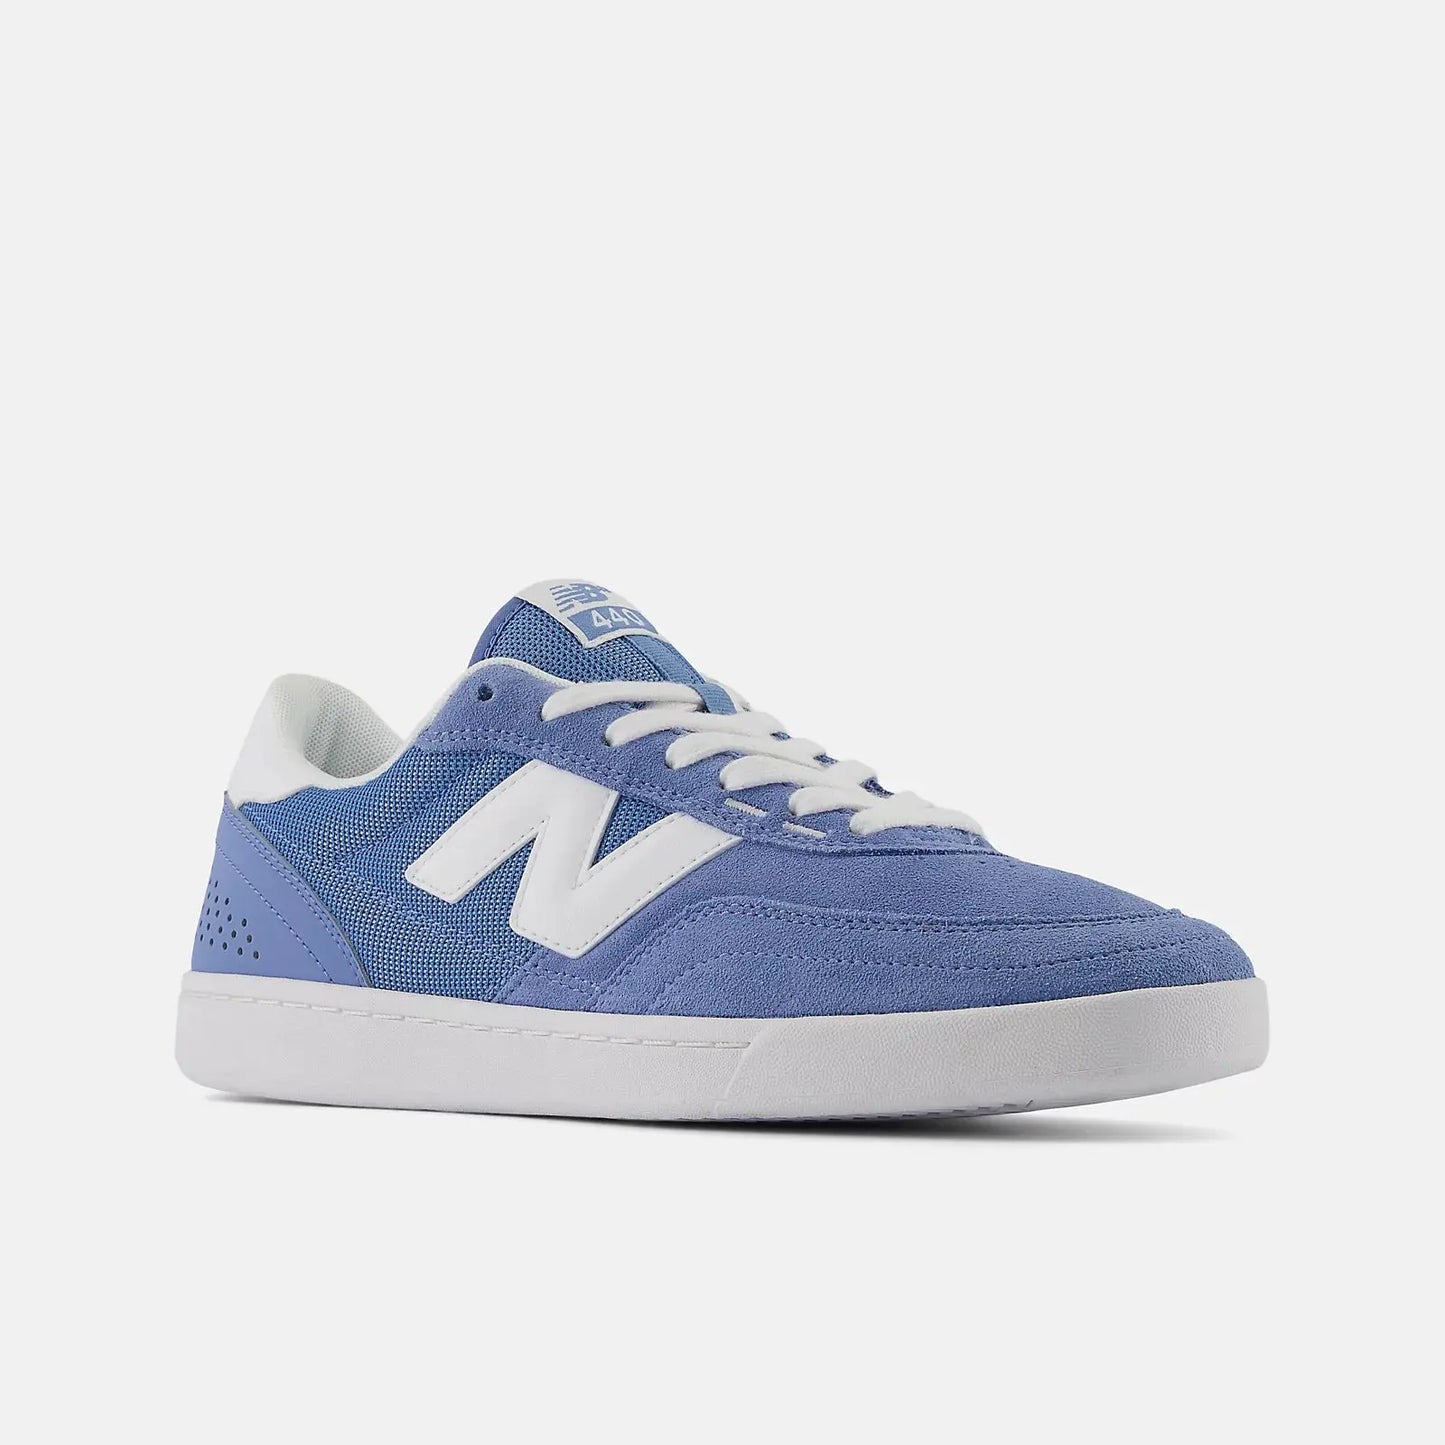 New Balance Numeric 440 V2 Shoes - Blue/White New Balance